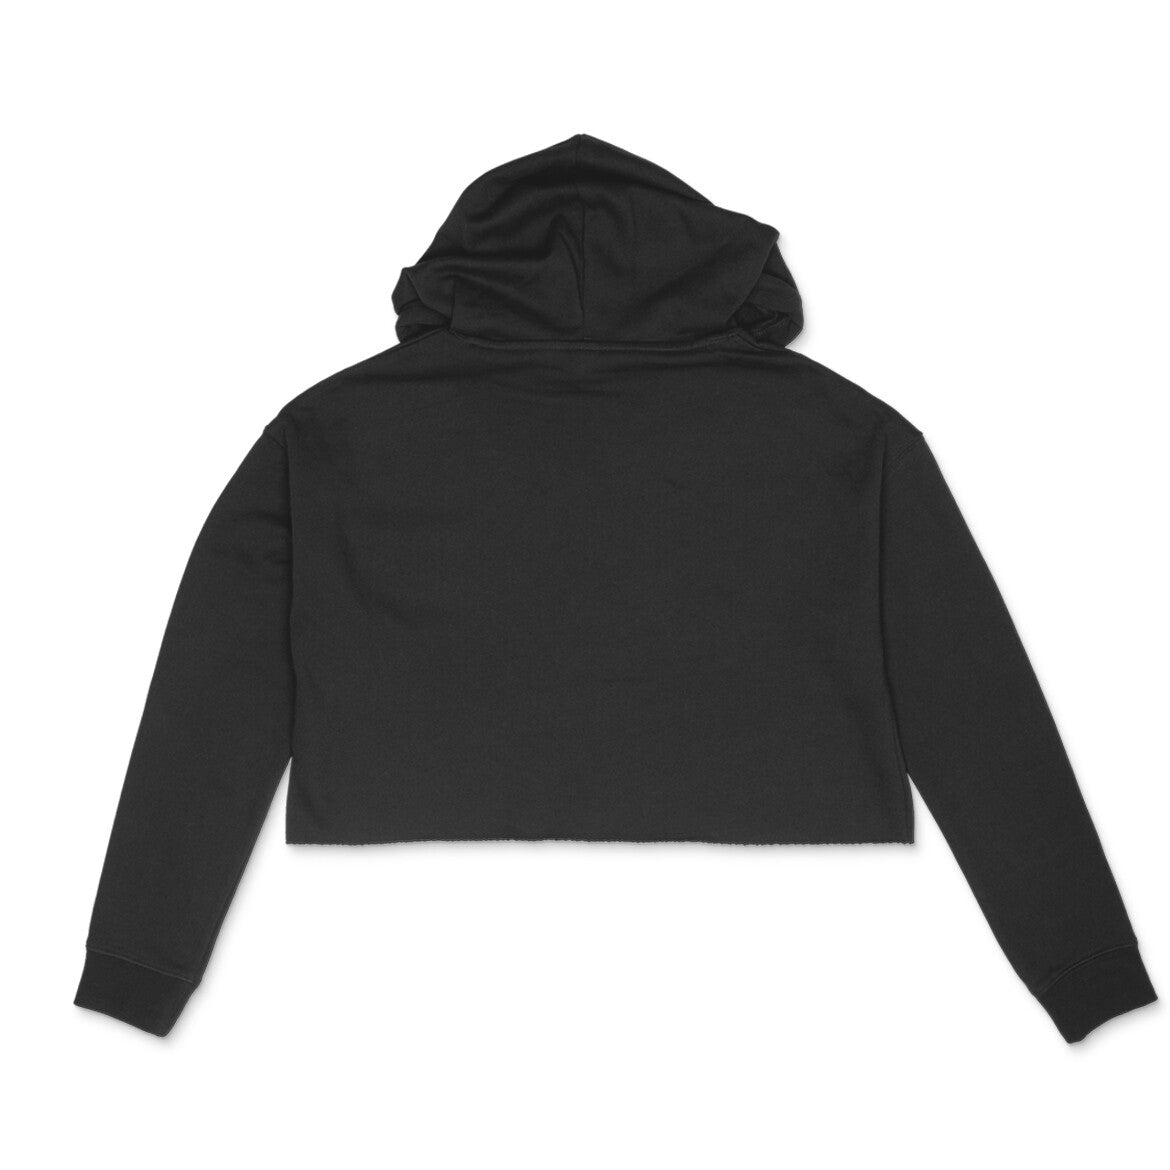 Women's black plain crop hoodie